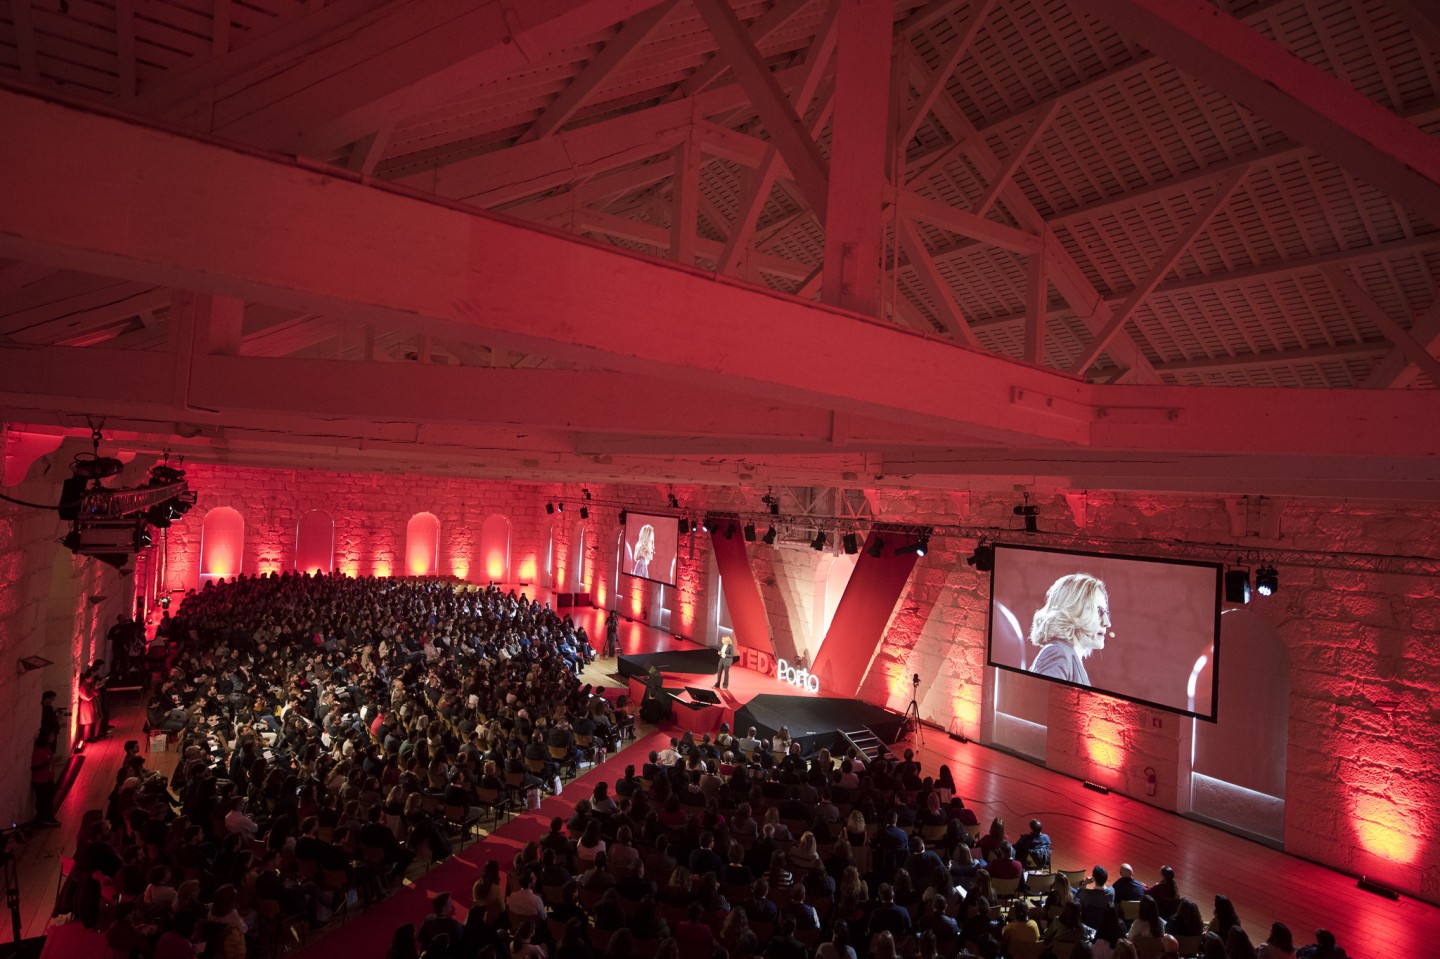 Confiança - Um Investimento em Valor | Emília O. Vieira | TEDx Porto